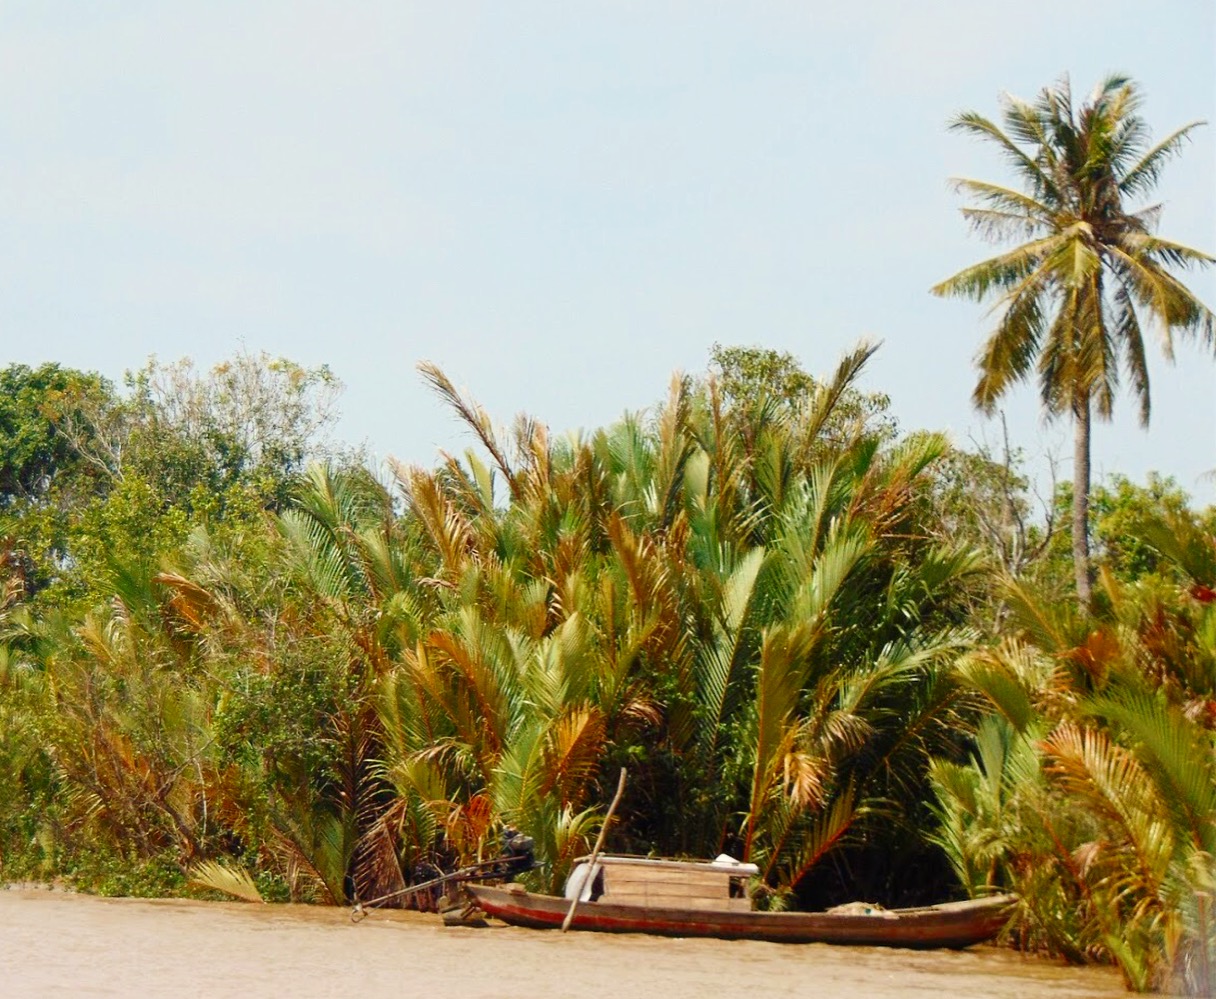 Kể chuyện làng: Thương cây dừa nước bến quê